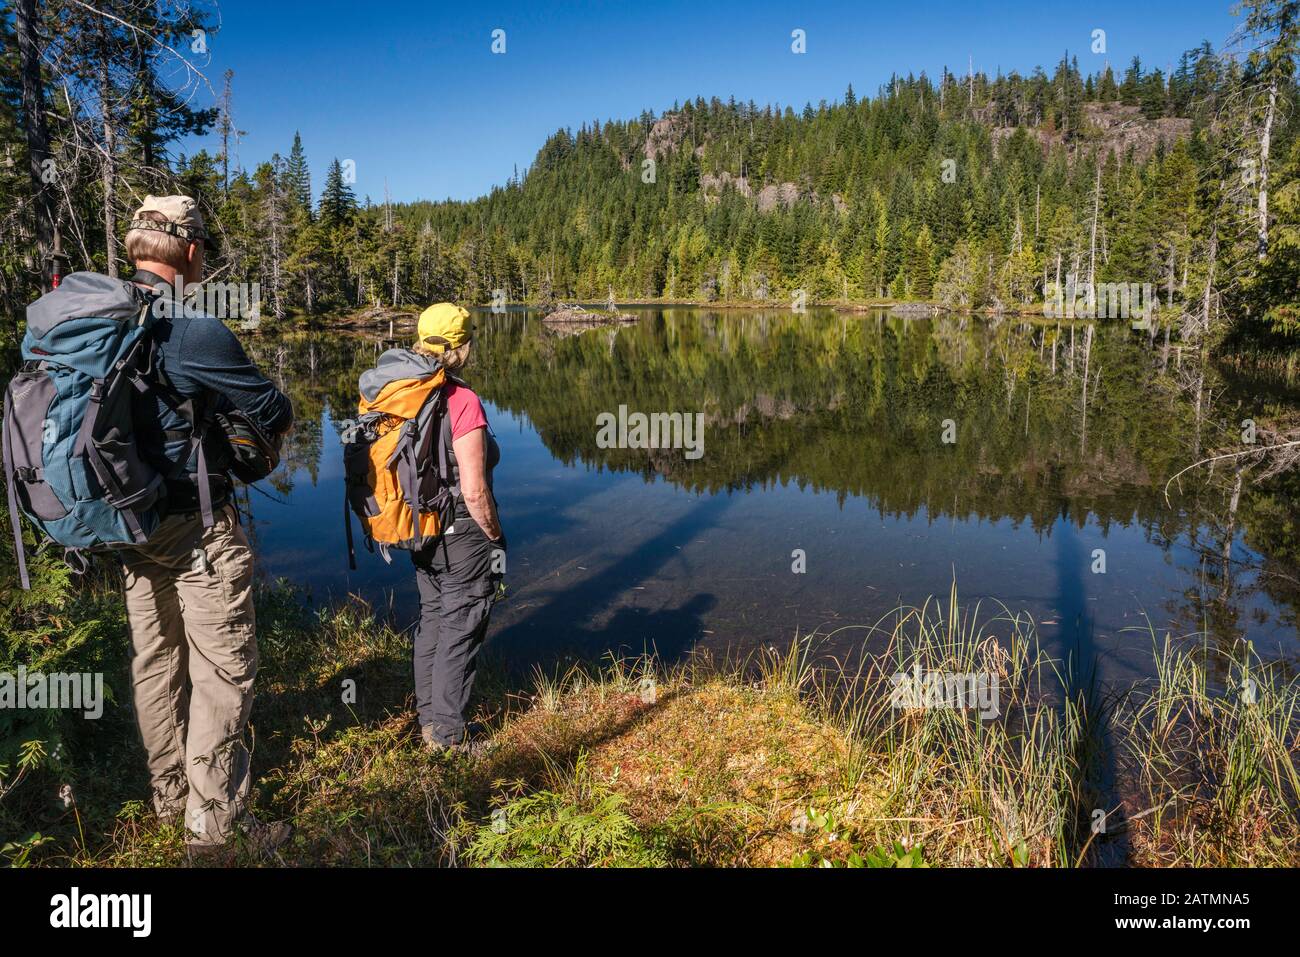 Escursionisti senior presso Il Lago Little Nugedzi nella foresta pluviale temperata, Quadra Island, British Columbia, Canada Foto Stock